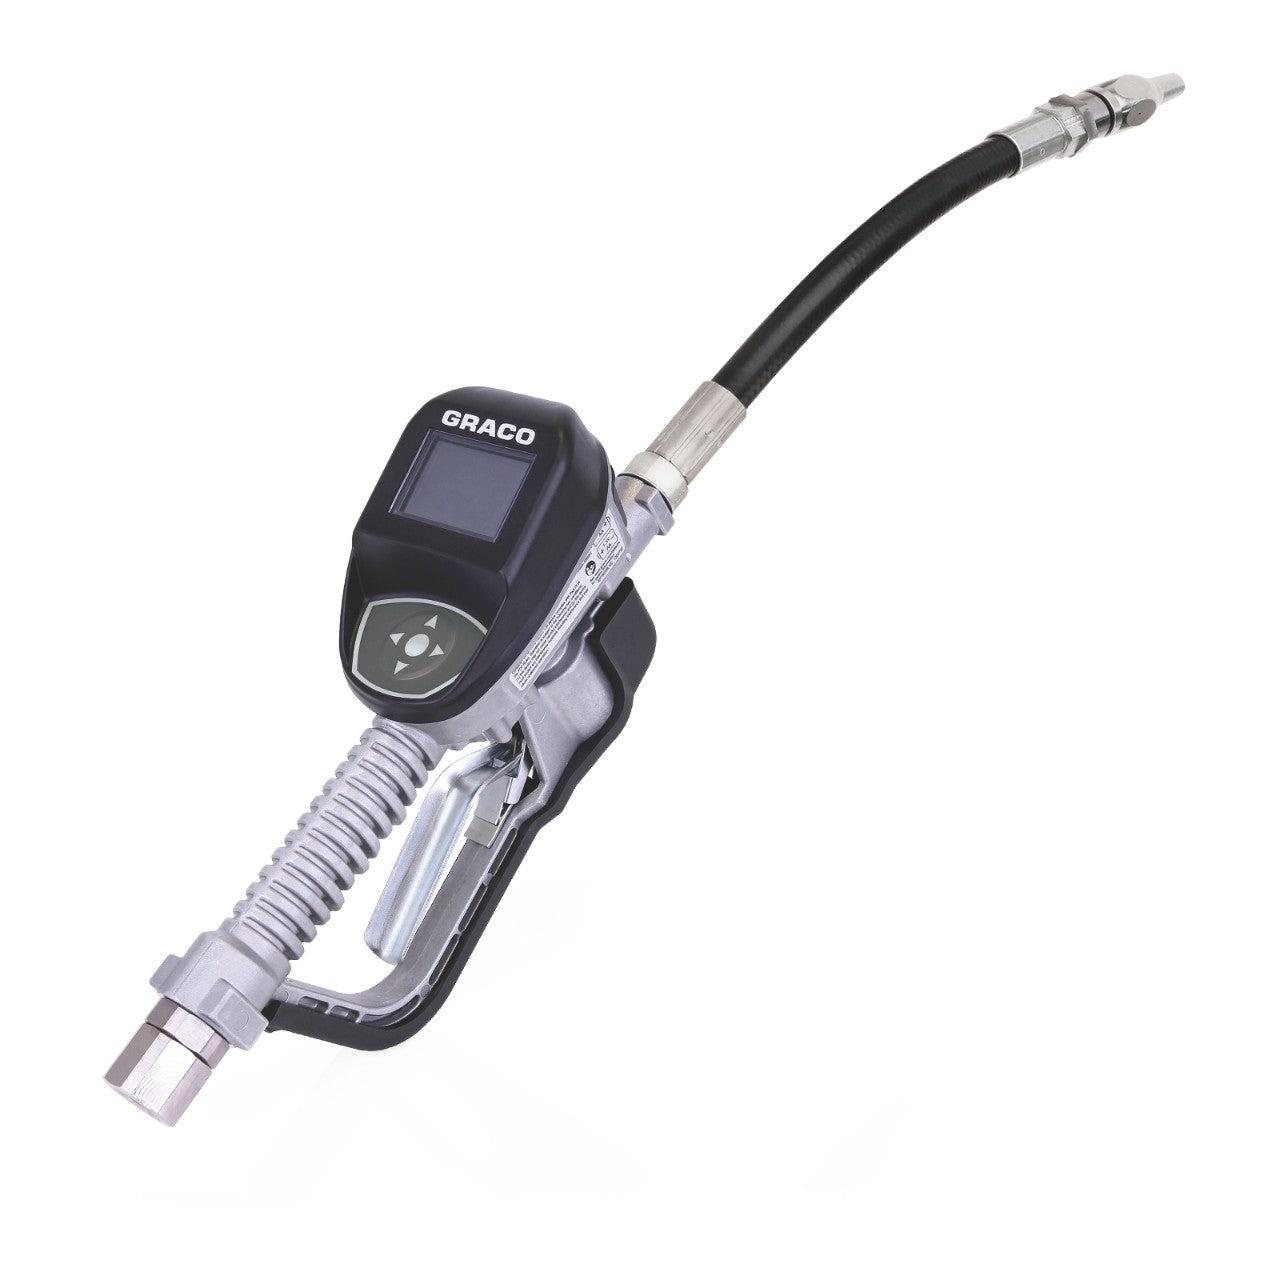 SDP8 Series Electronic Preset Antifreeze Meter - Flexible Extension - 1/2 in. (13 mm) Inlet